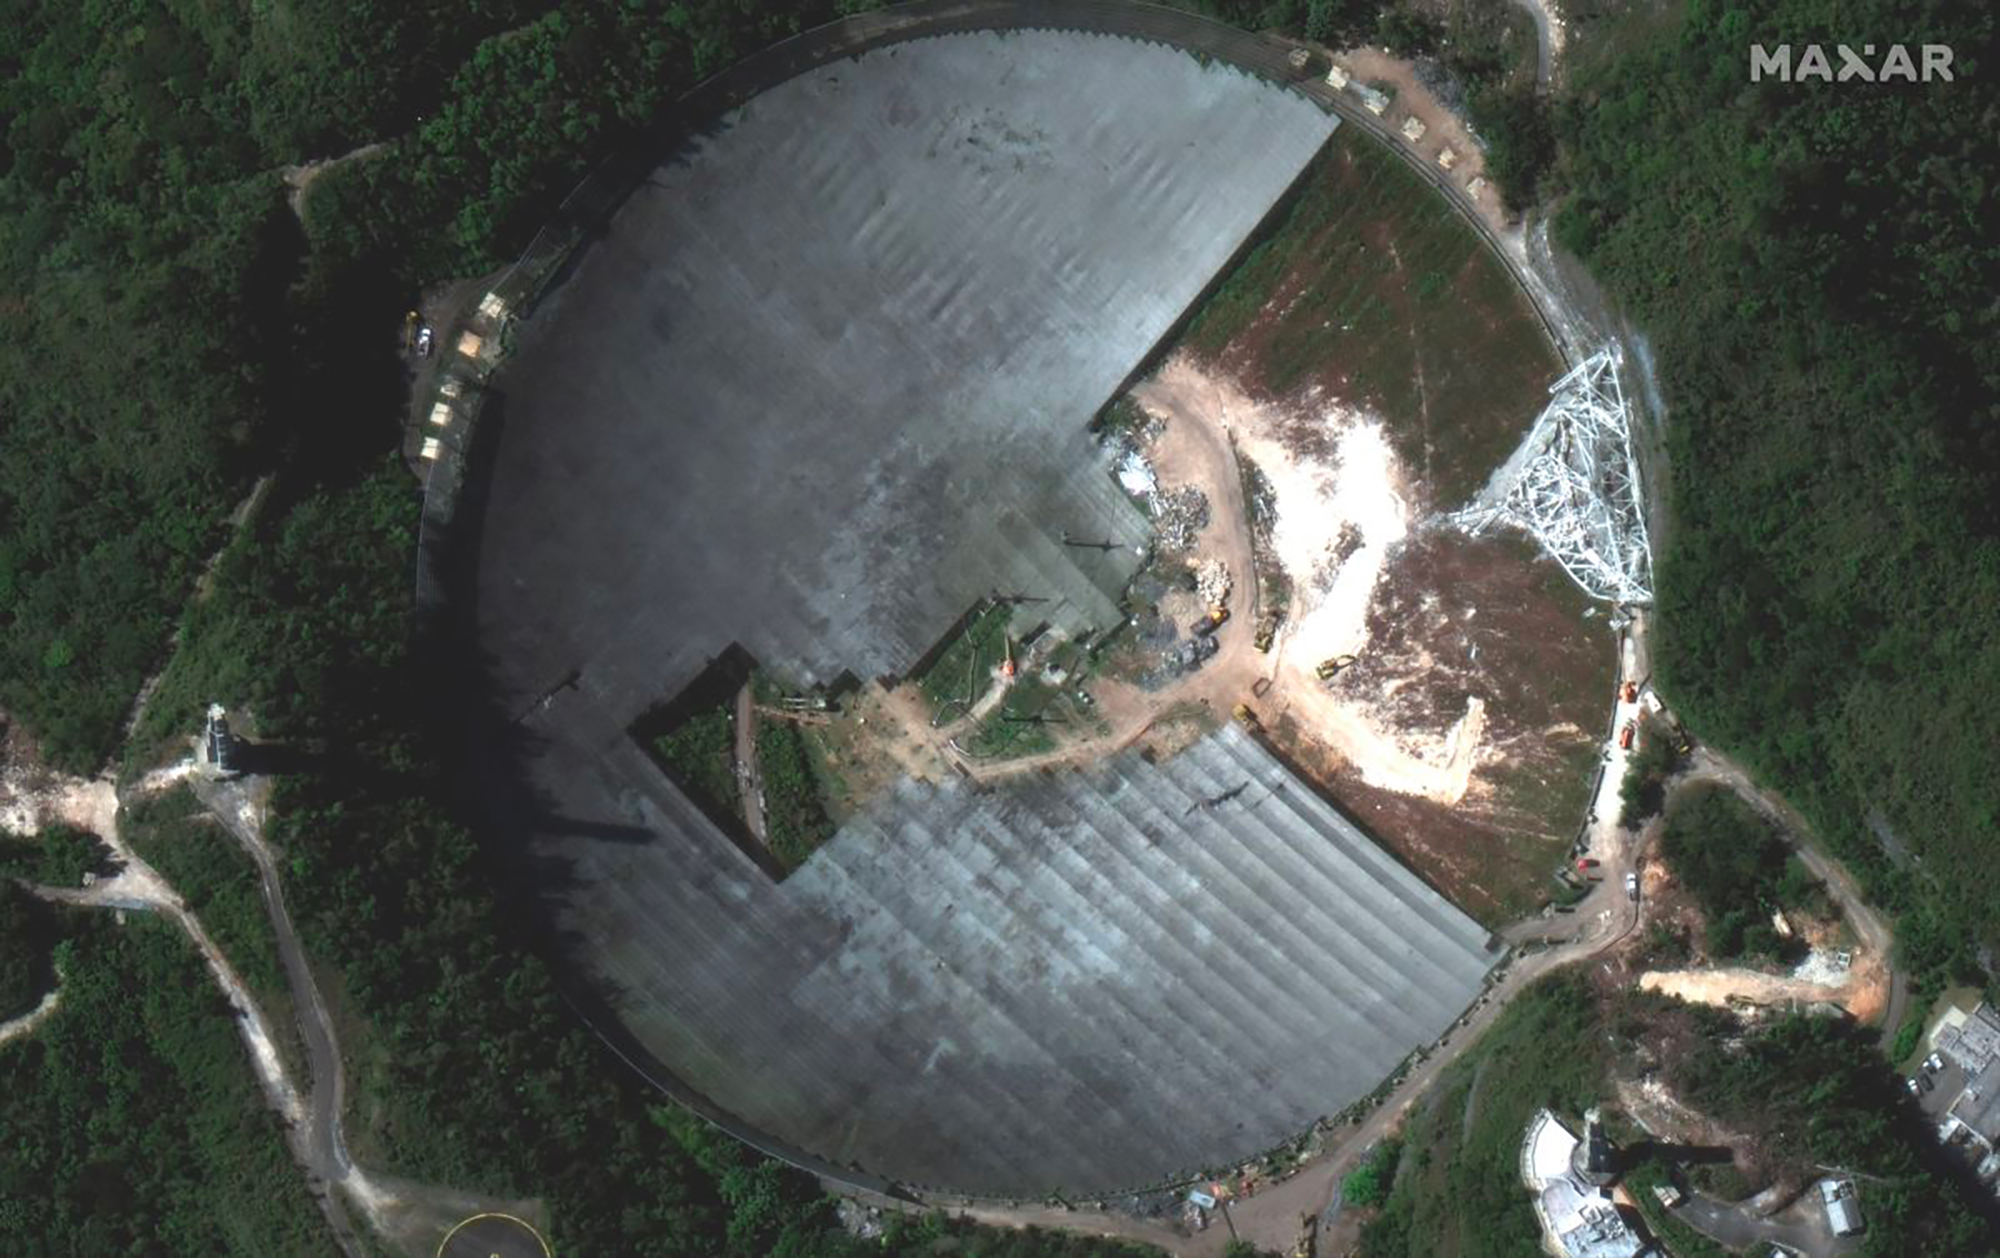 Le radiotélescope d'Arecibo en cours de démontage observé par un satellite Worldview de Maxar. L'image a été acquise le 23 février 2021. © Maxar